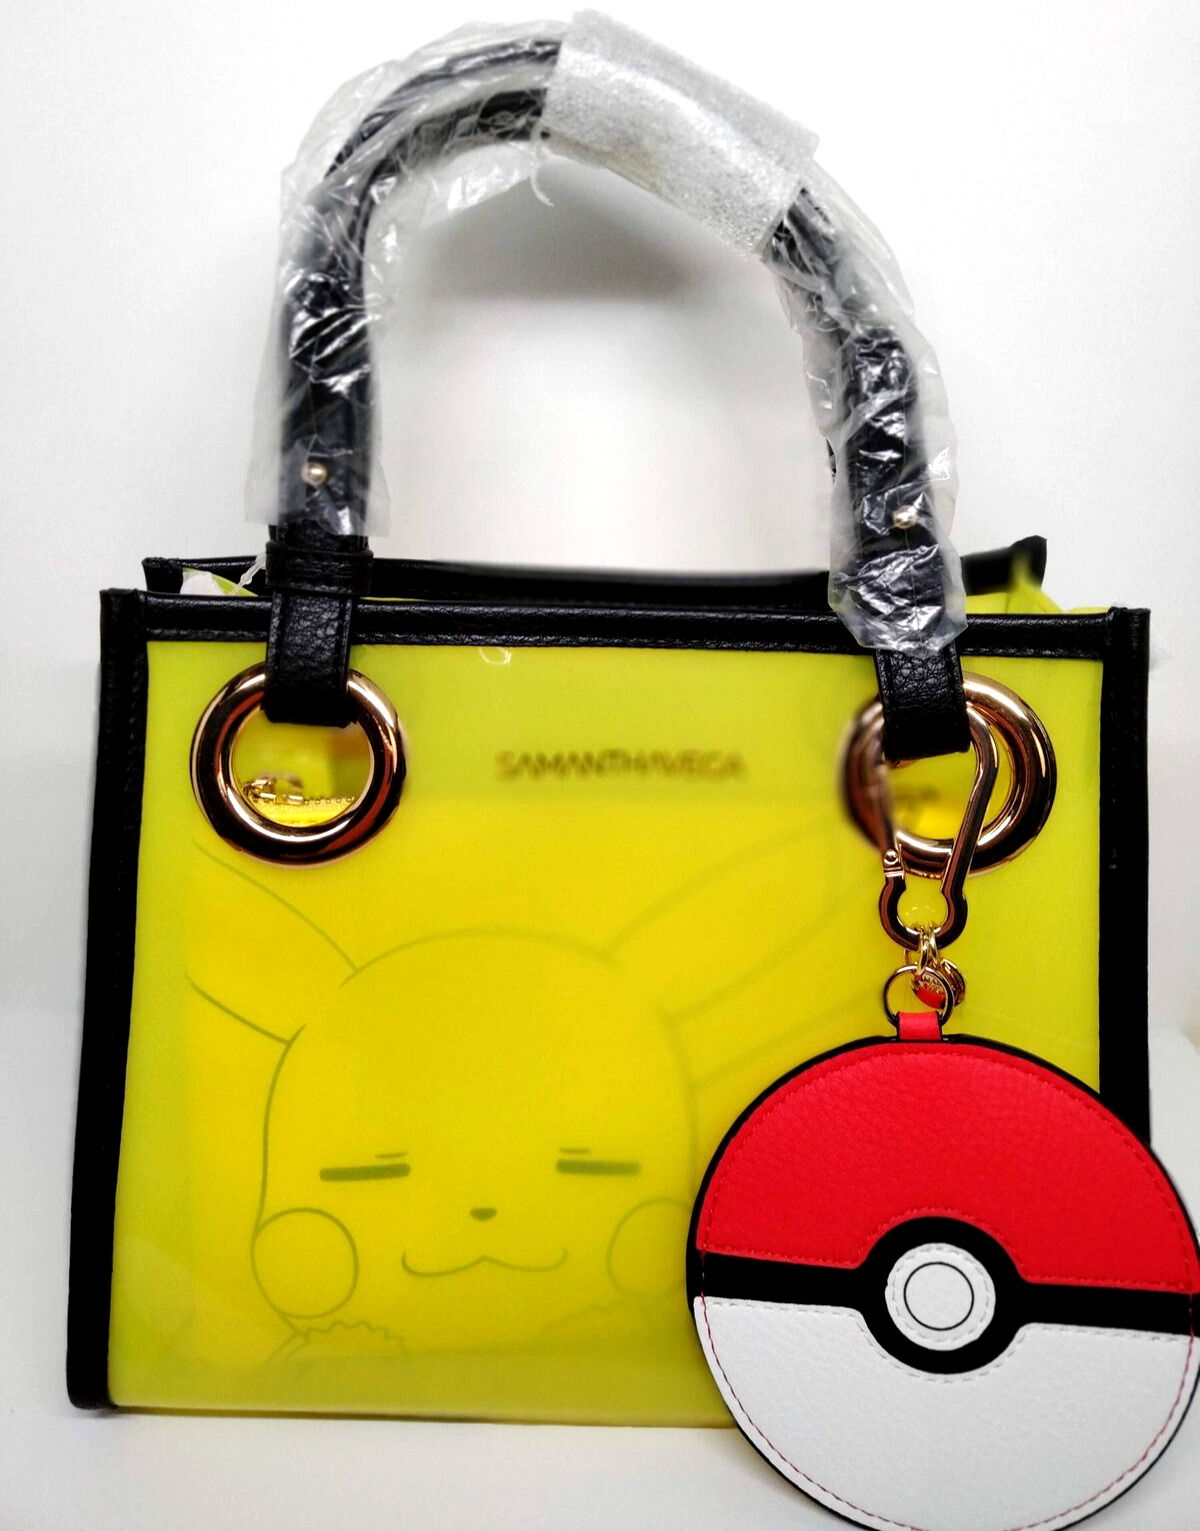 Pokemon SamanthaVega Pikachu Clear Bag Japanese Fashion Samantha Thavasa Gift